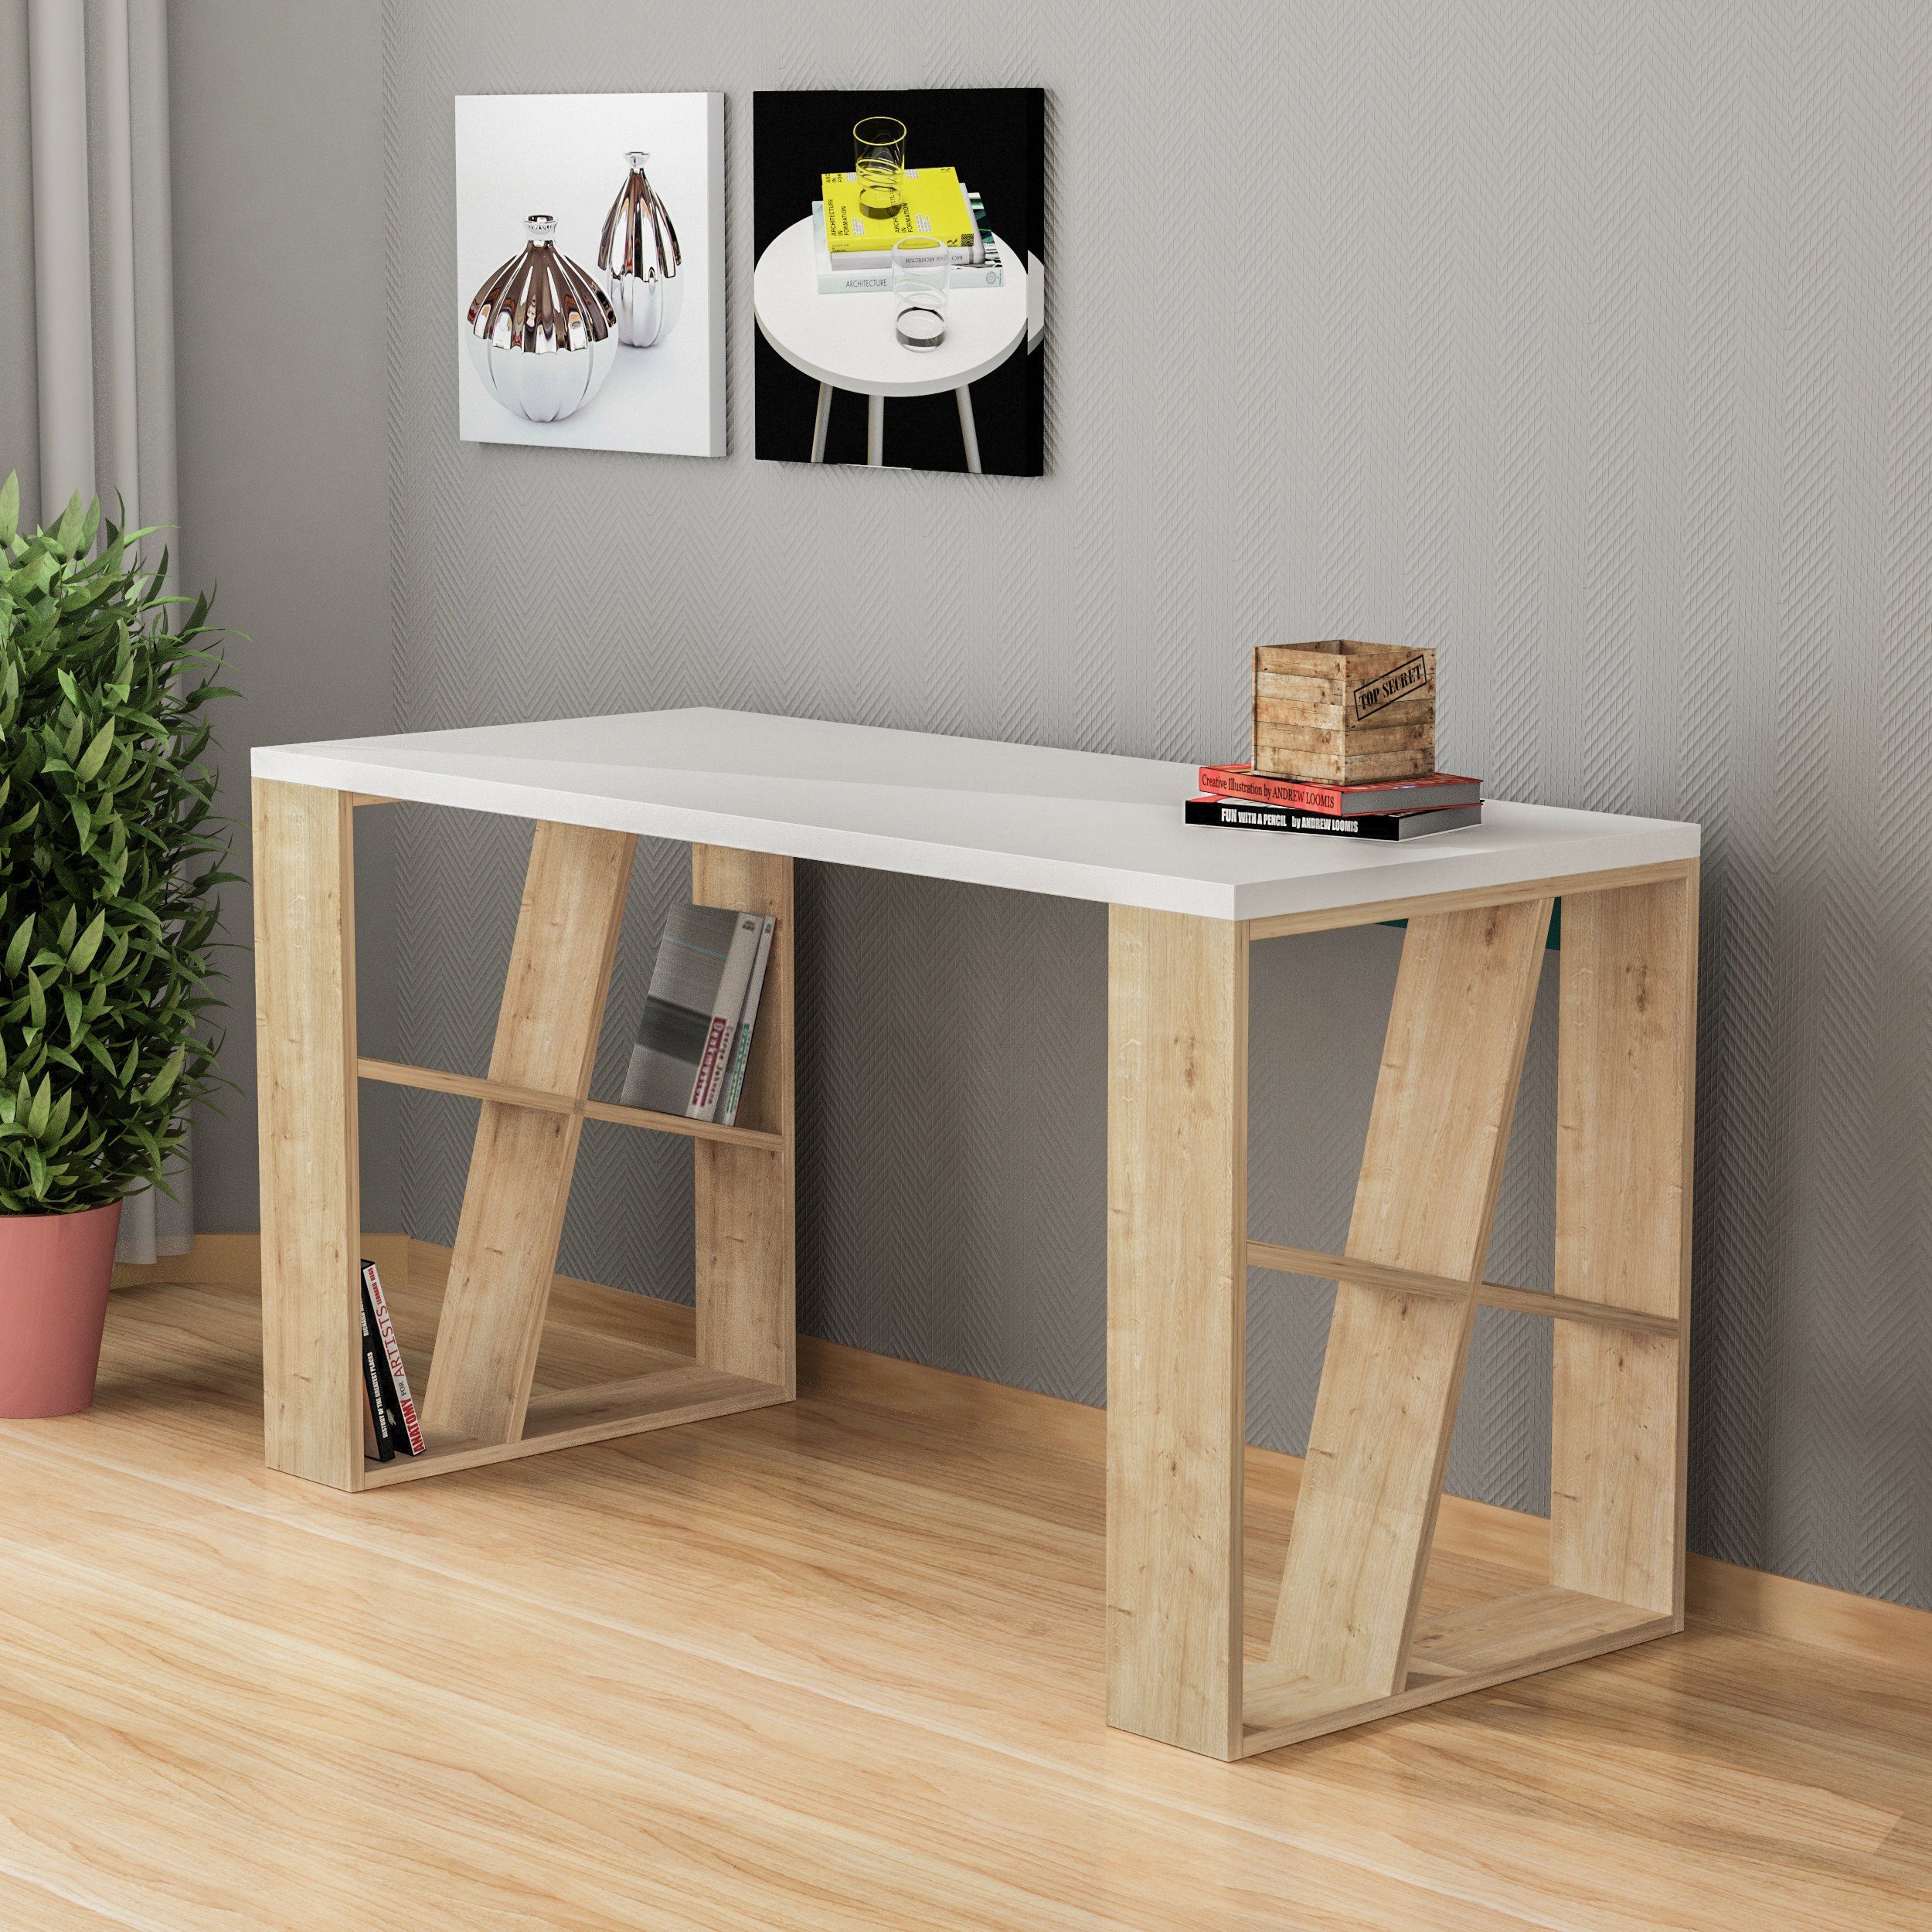 Decortie Schreibtisch Honey (1 Tisch), Moderner Schreibtischt mit Bücherregal, 137 x 60 x 75 cm weiß-eiche